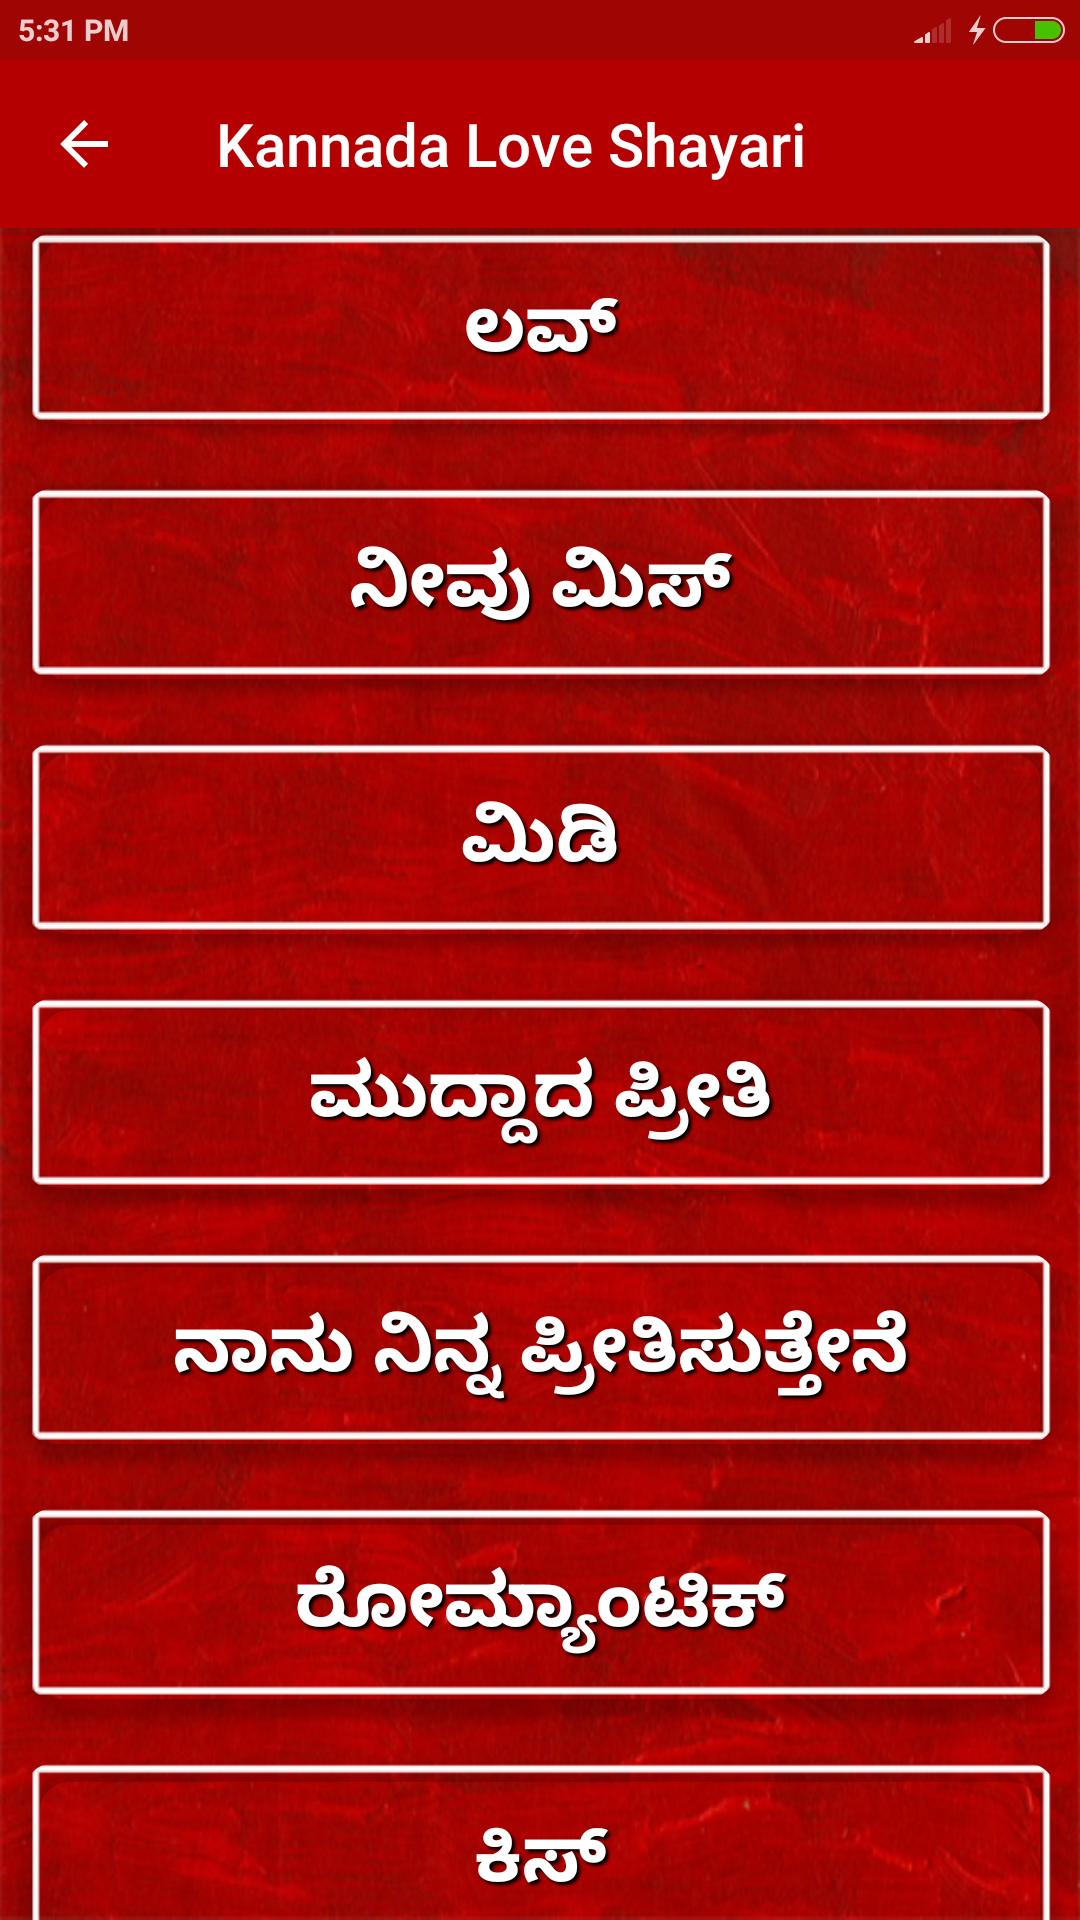 Kannada Love Shayari for Android - APK Download